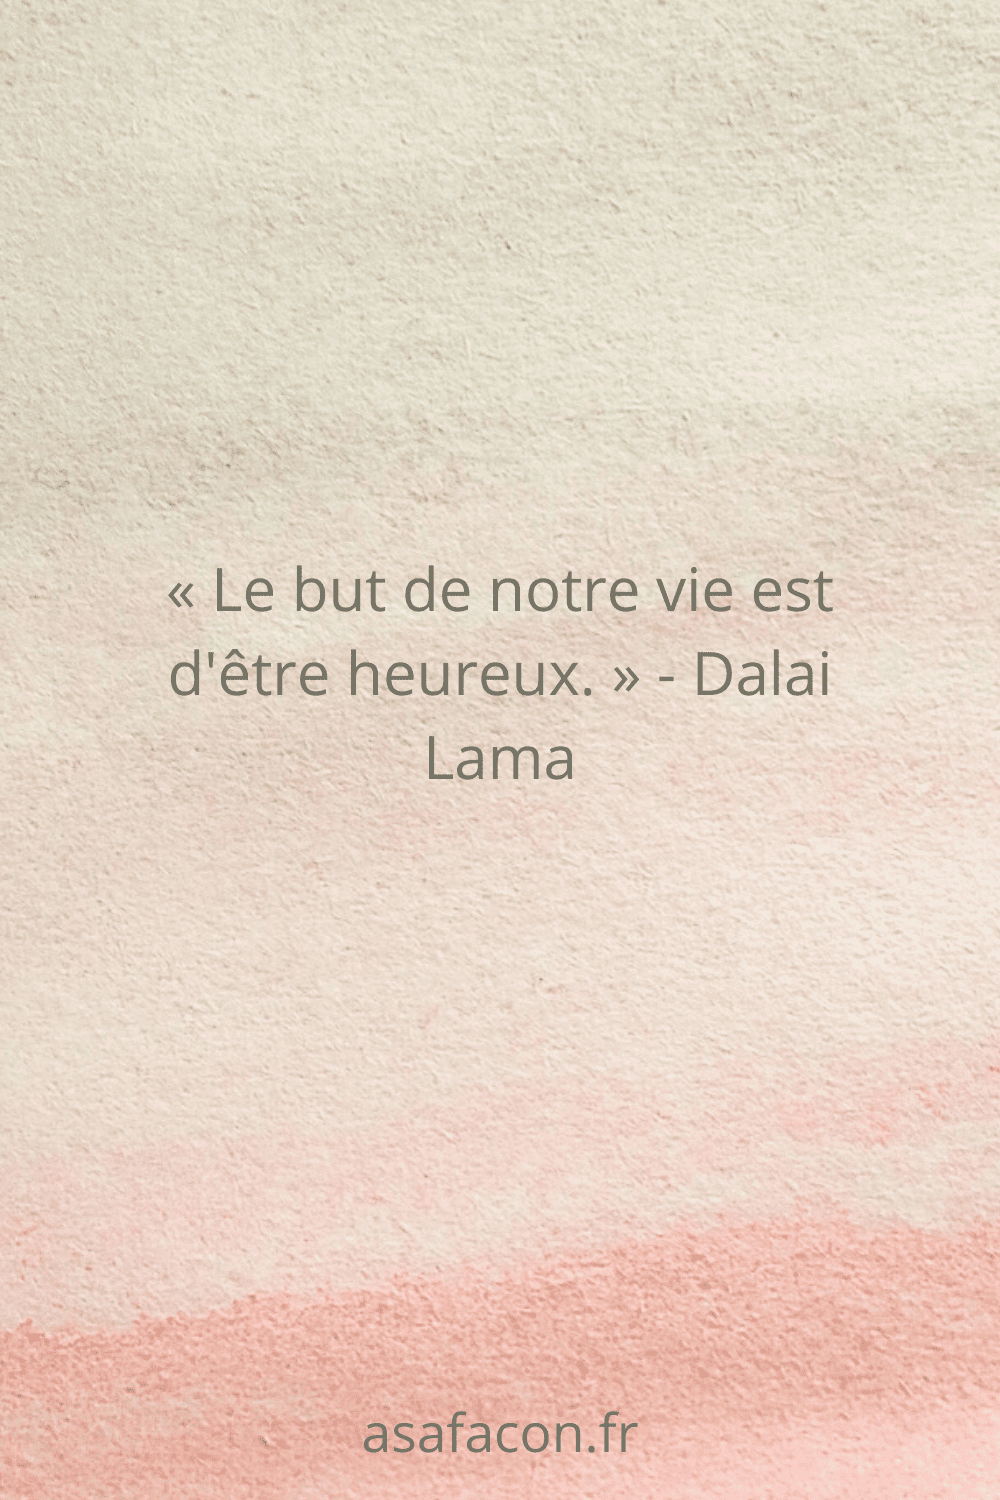 « Le but de notre vie est d'être heureux. » - Dalai Lama